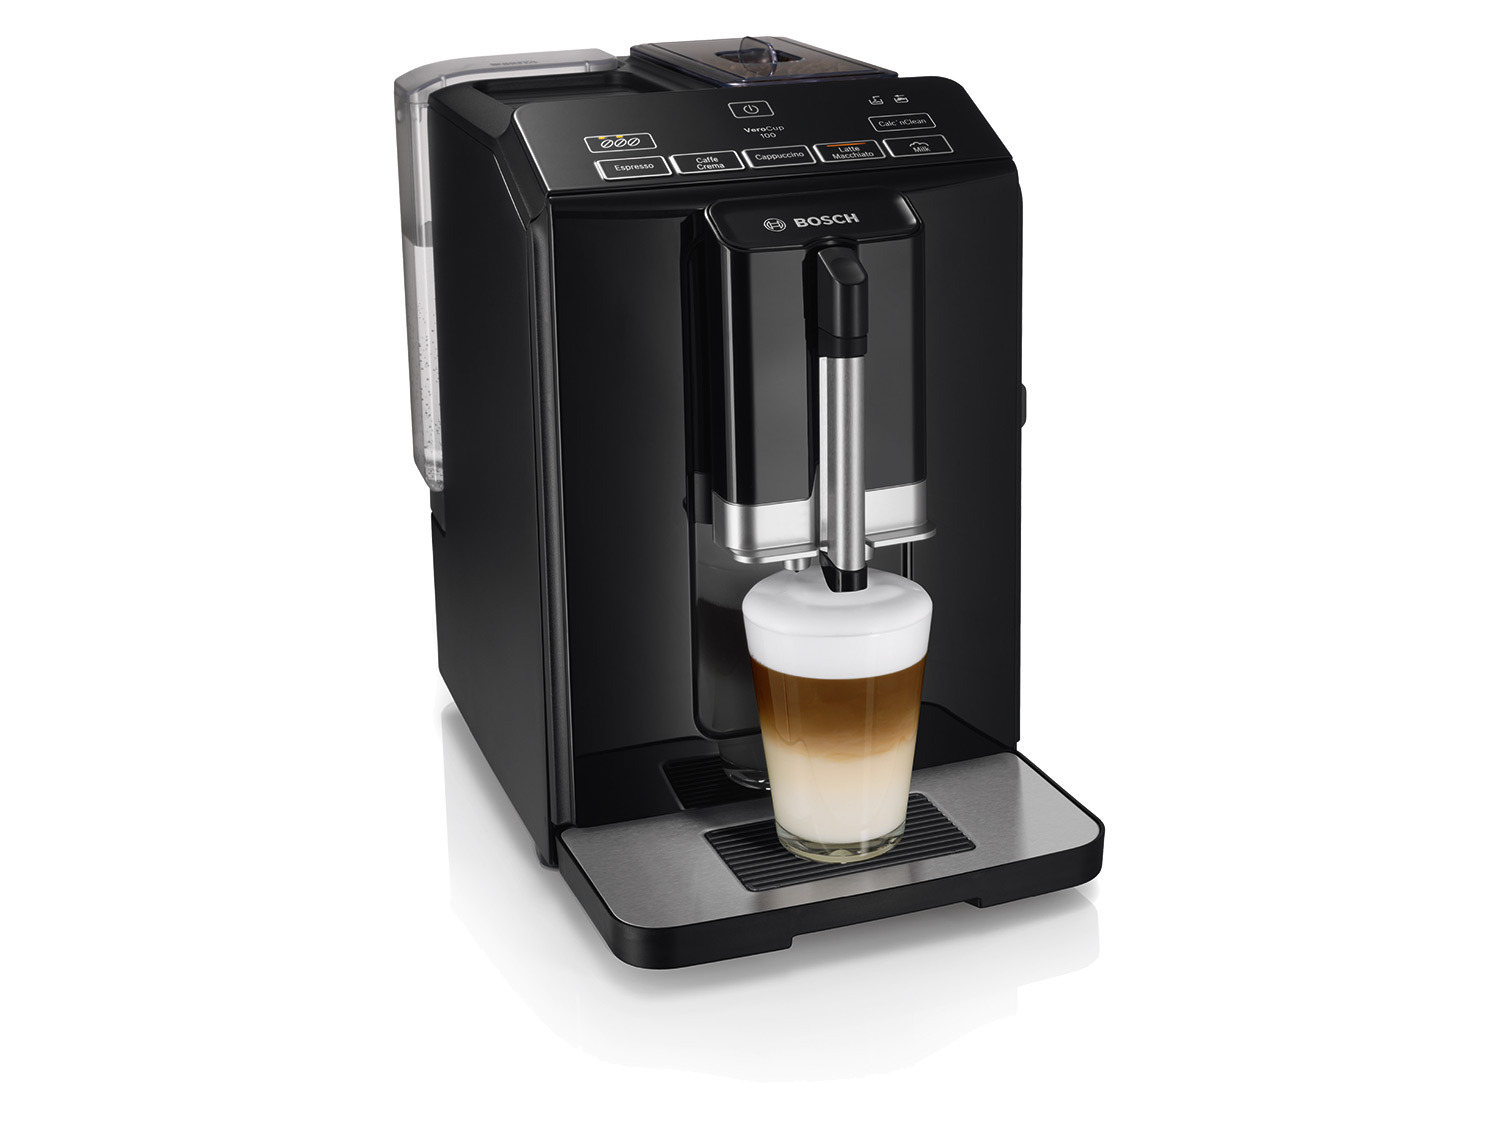 BOSCH Kaffeevollautomat Milchaufschäumer »VeroCup100 TIS30159DE« bei Lidl